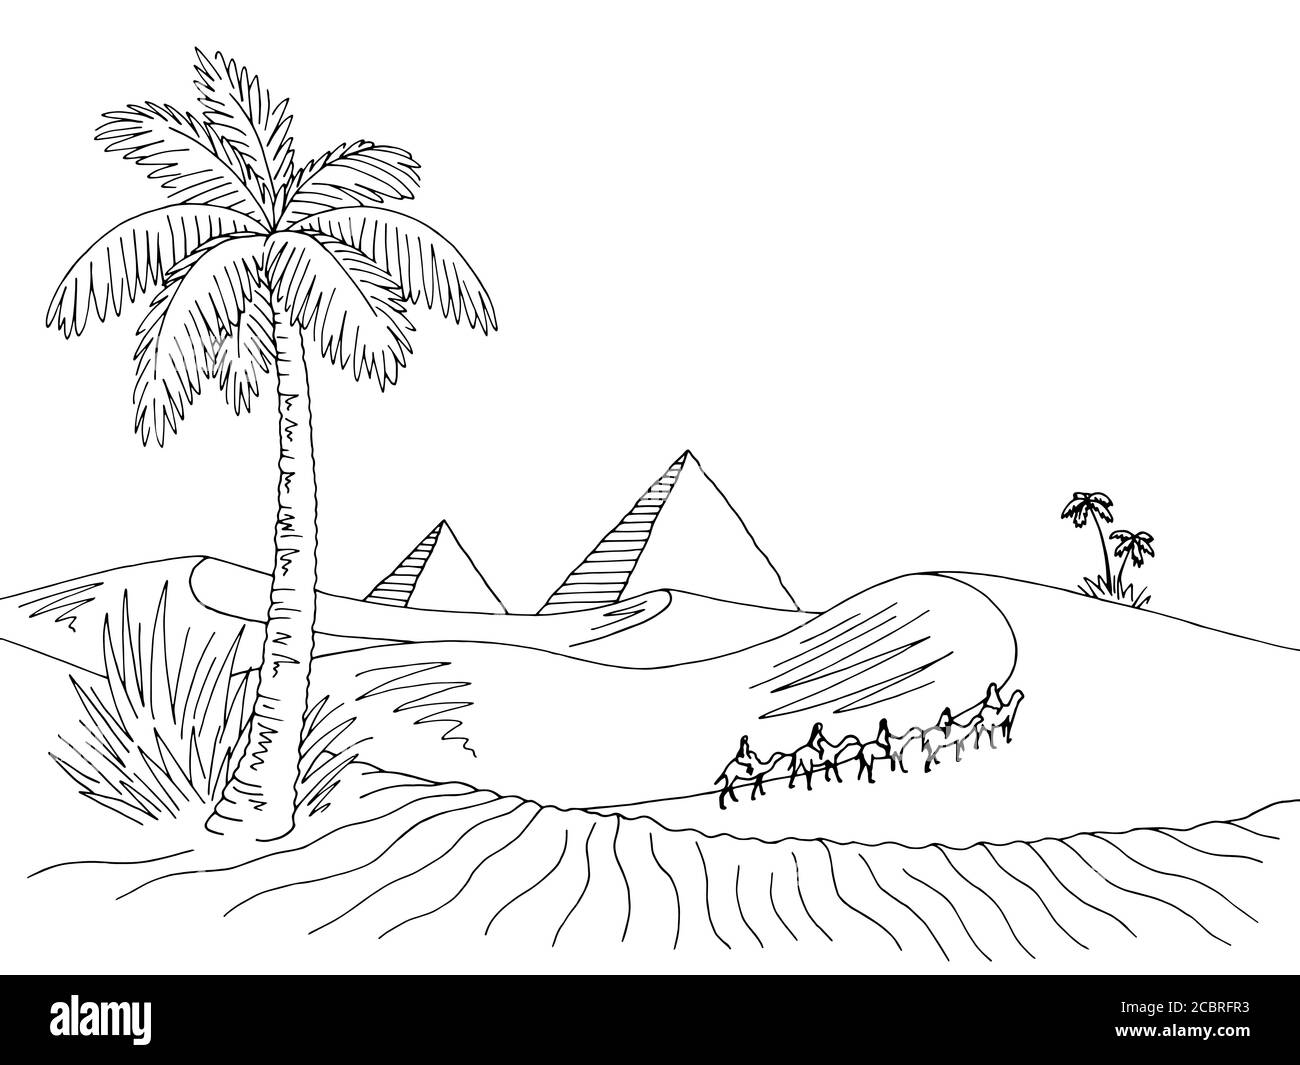 Desert graphic black white landscape sketch illustration vector Stock Vector